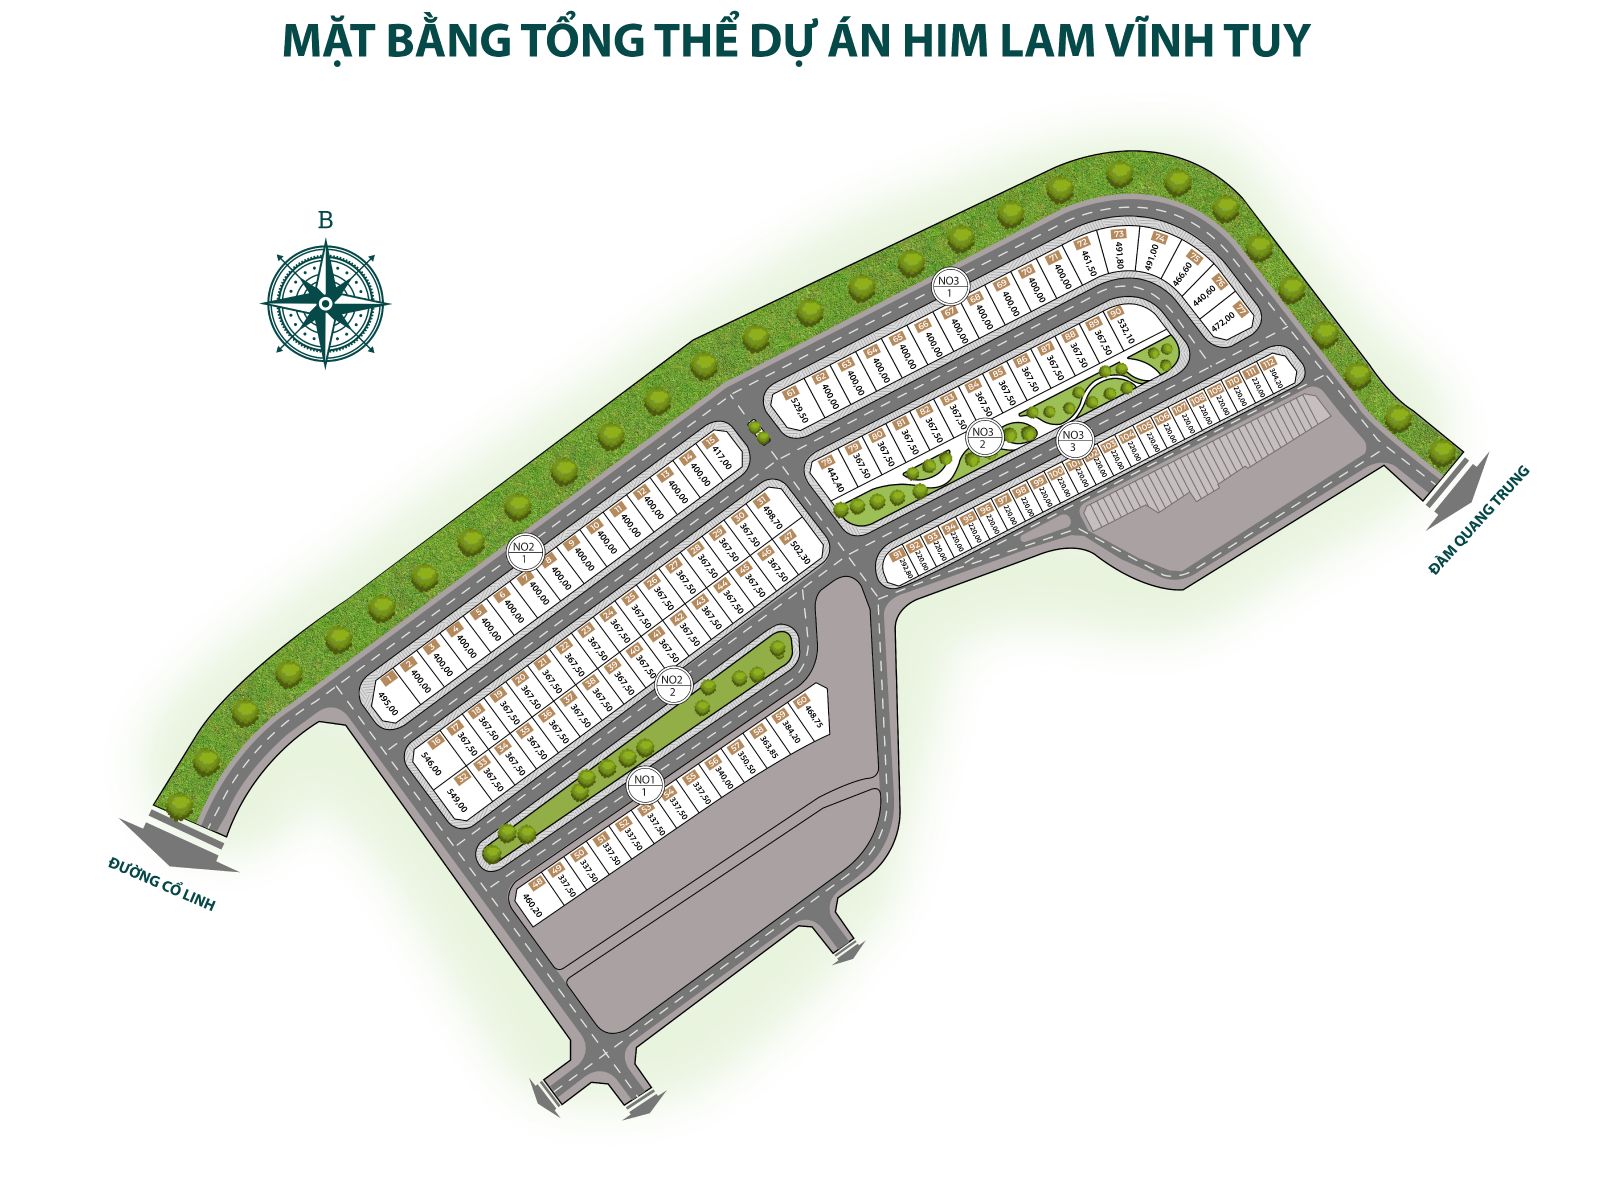 Him Lam Vĩnh Tuy